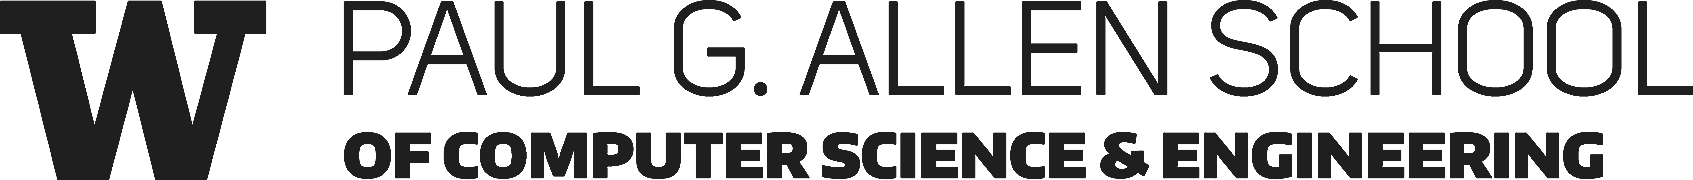 Allen School's logo